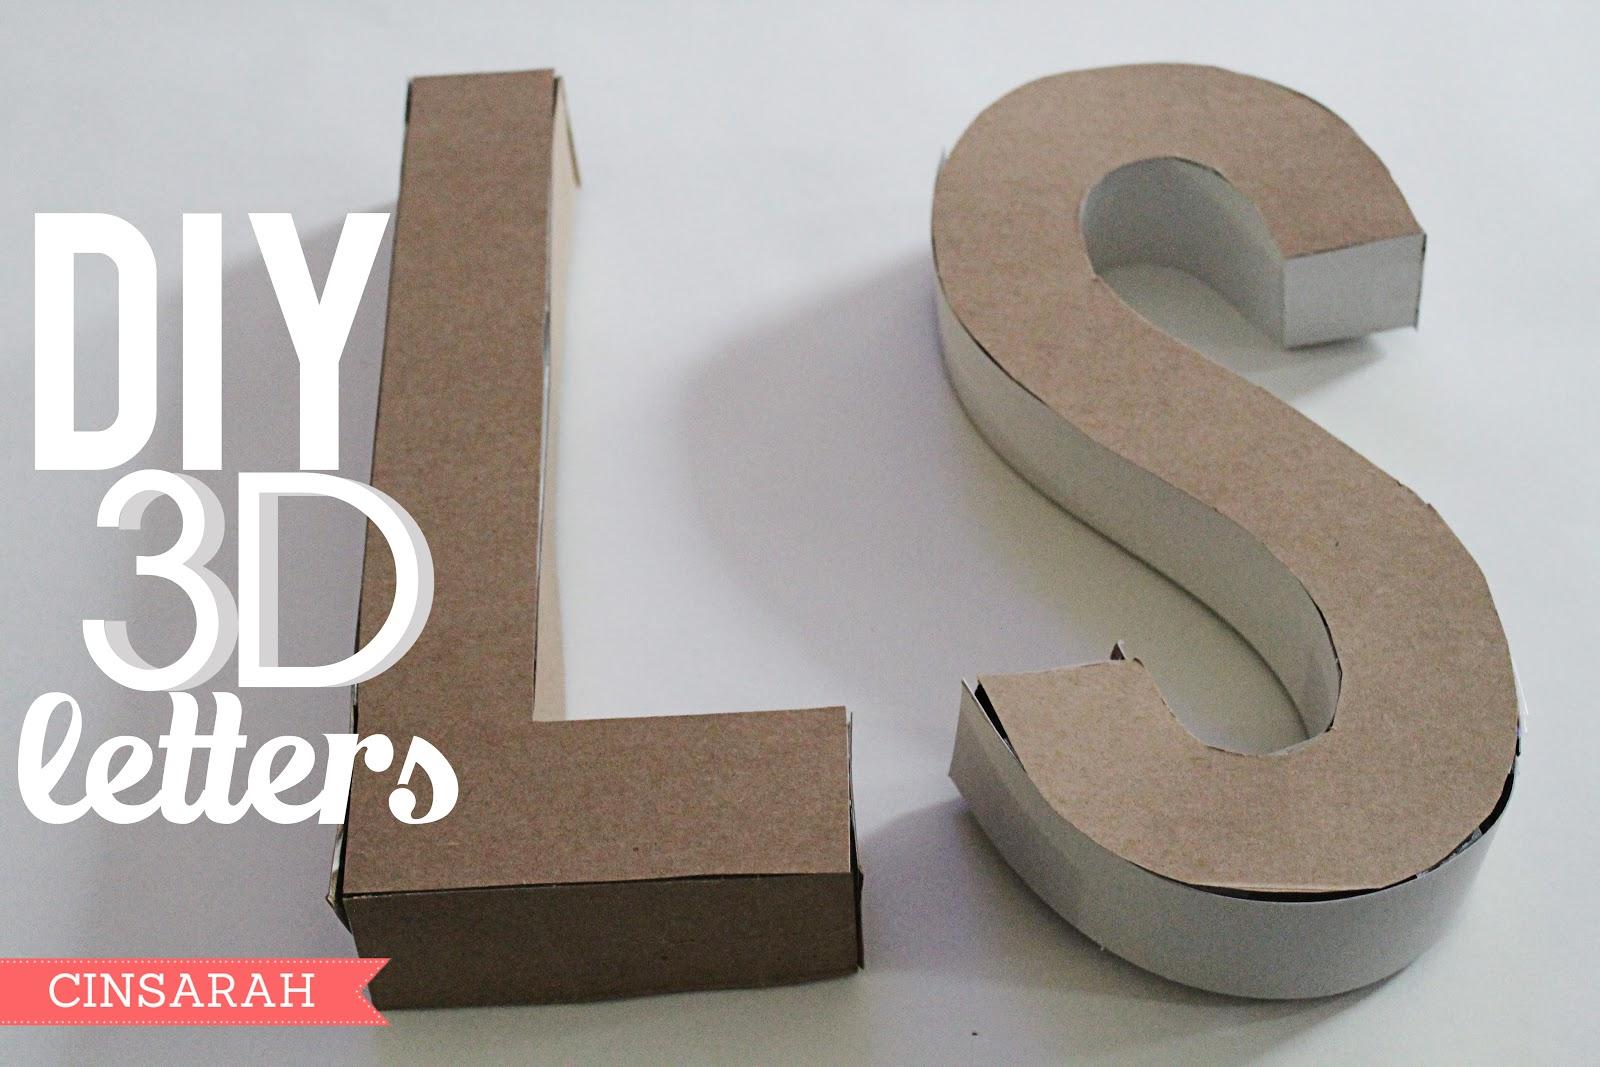 Cinsarah: Diy 3D Letters - Free Printable 3D Letters